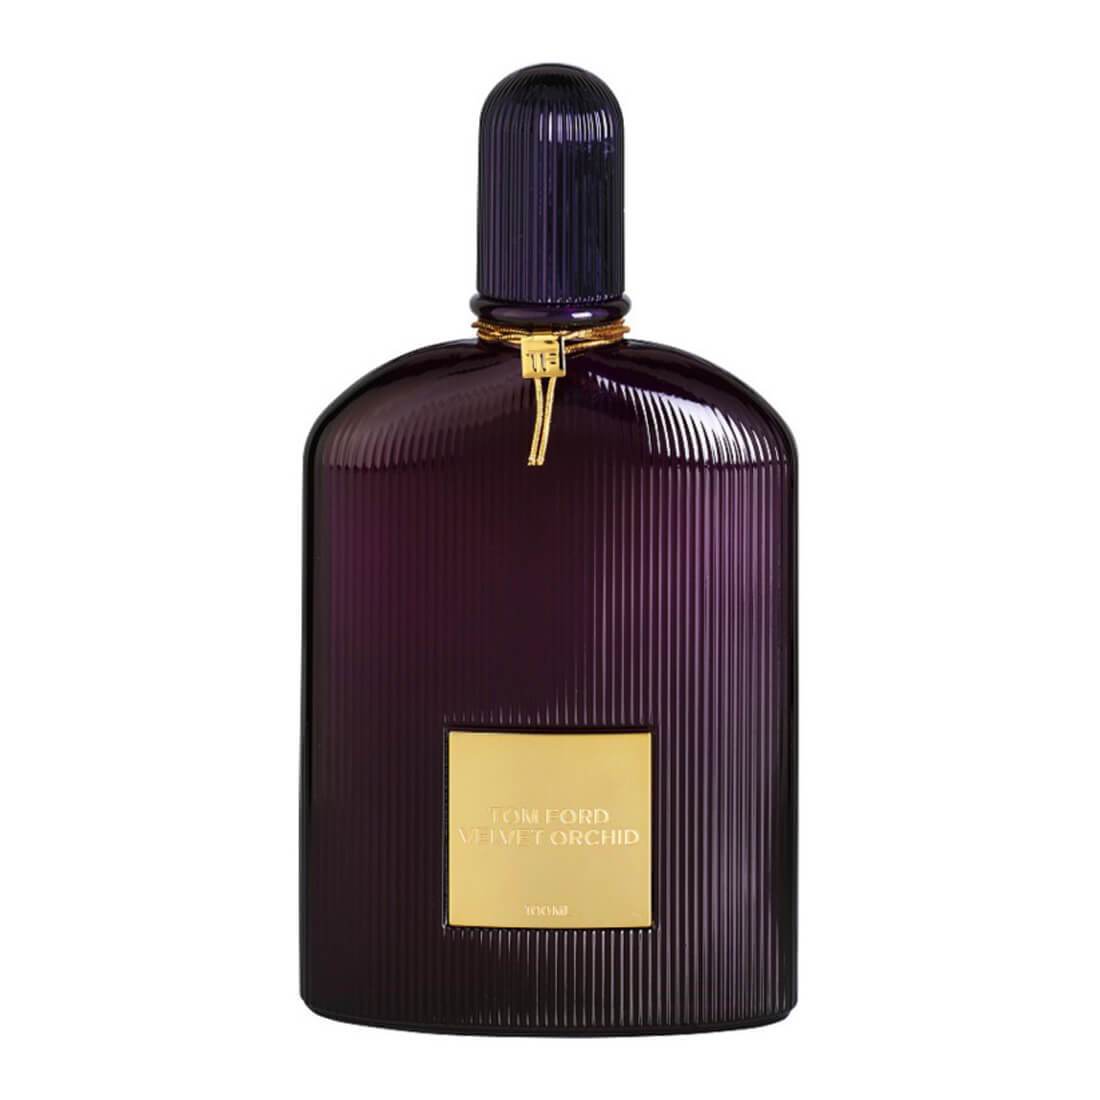 Tom Ford Velvet Orchid Eau De Perfume - 100ml - Branded Fragrance India